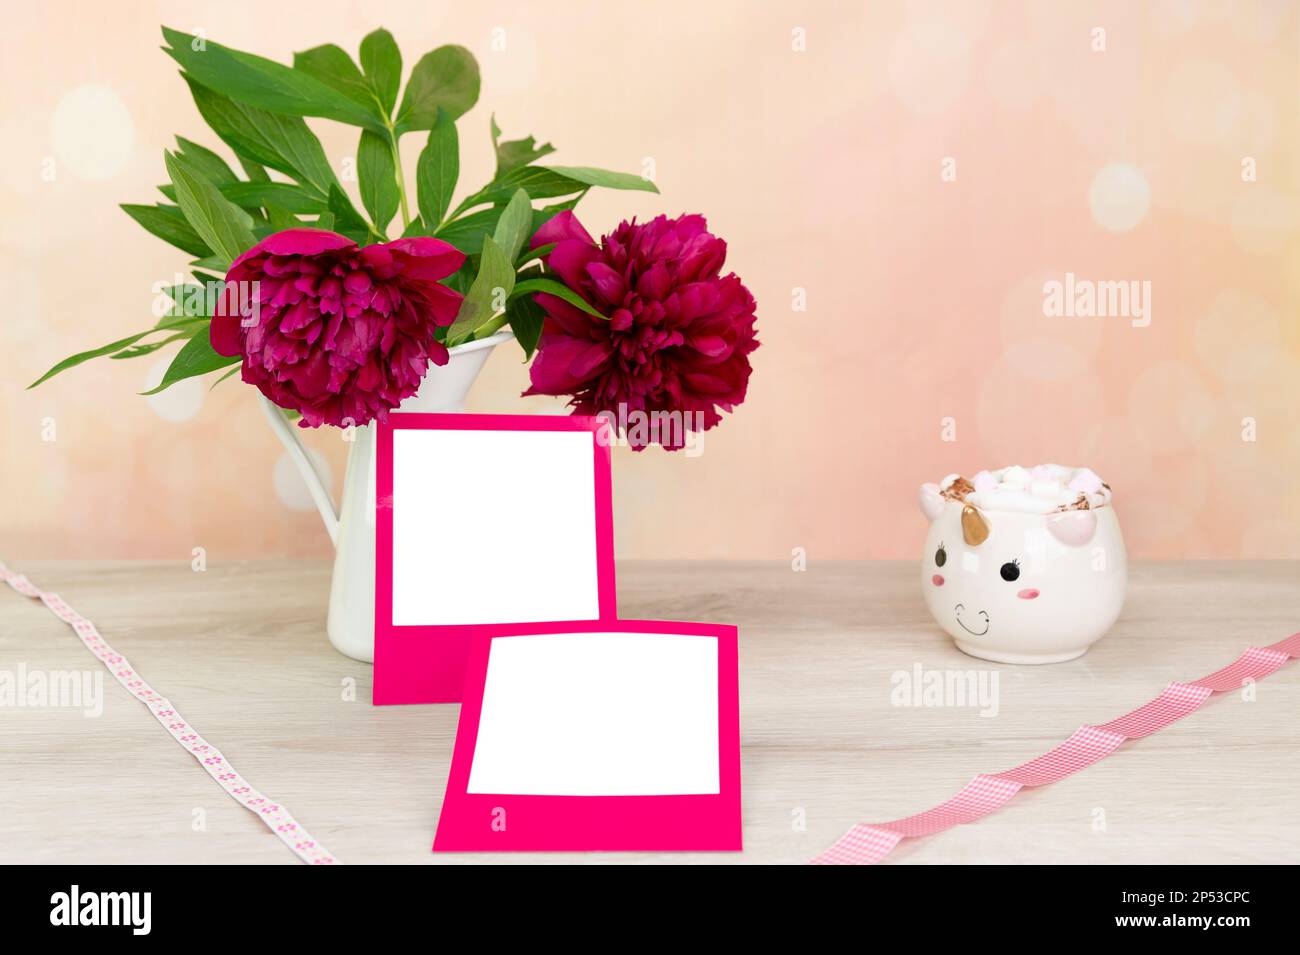 Modell für quadratische Bereiche mit rosafarbenem Rahmen. Pfingstrosen (Paeonia) in einer weißen Zinnvase. Ein Einhorn-Becher mit Marshmallows. Heller Hintergrund in Pfirsich und Pink bis Stockfoto